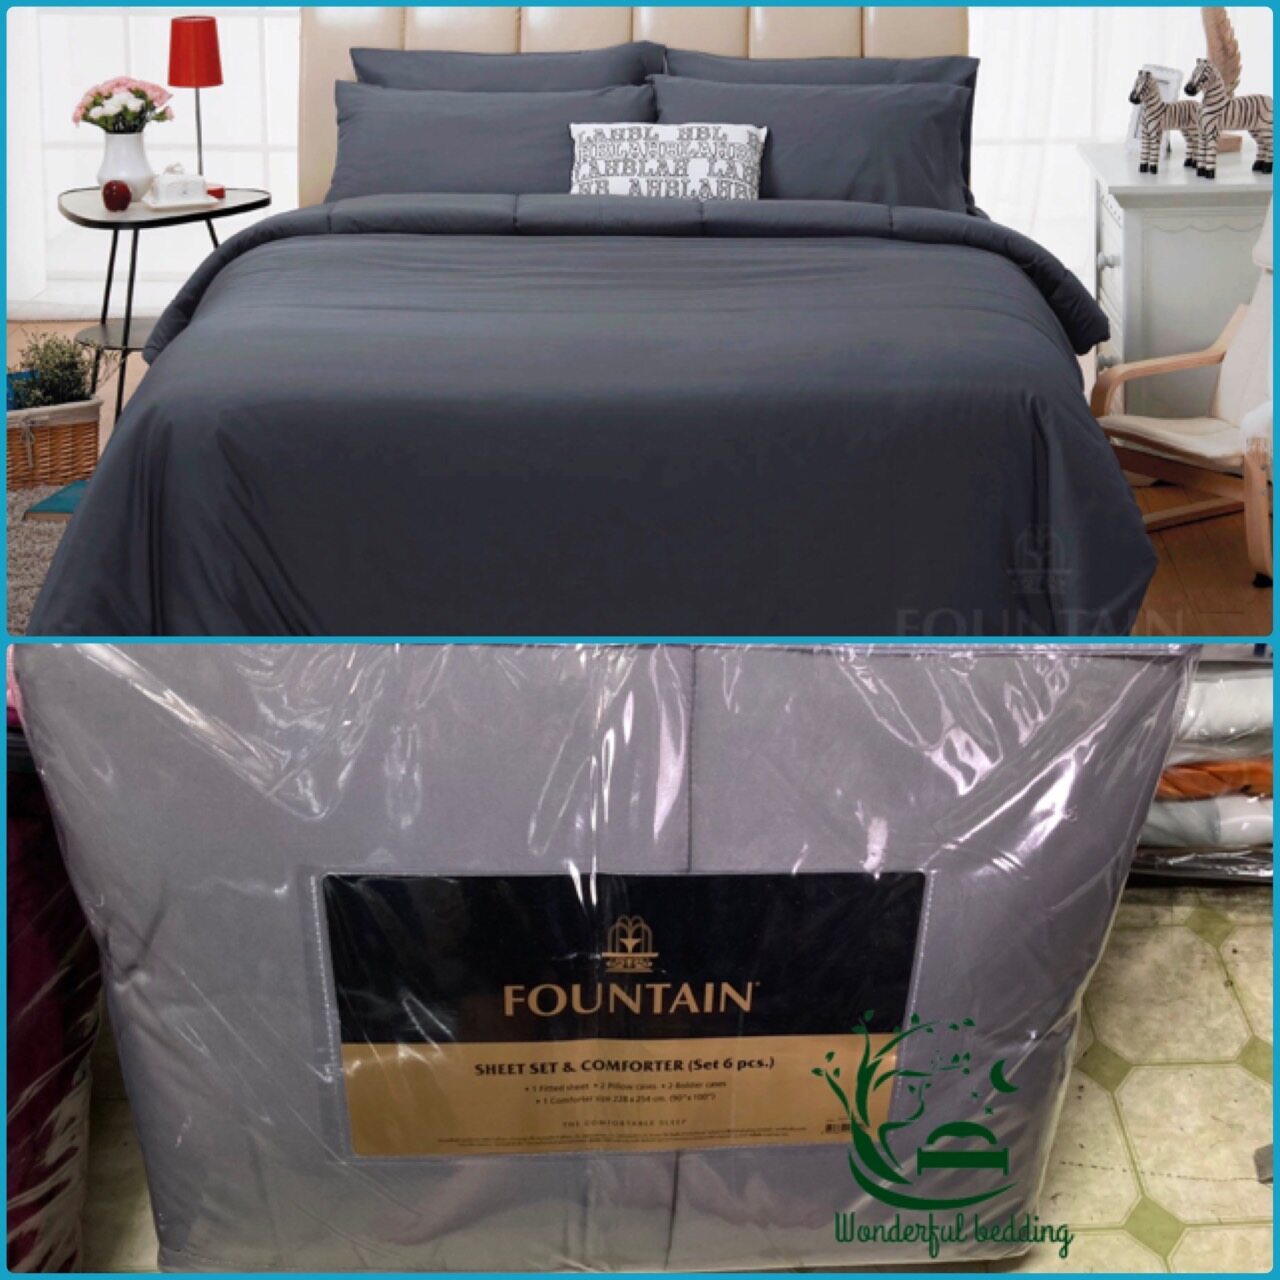 FOUNTAIN ผ้านวม + ชุดผ้าปู ผ้าปู ที่นอน แท้ 100% FTC สีพื้น เขียว Green Gray เทา ขนาด 3.5 5 6ฟุต ชุดเครื่องนอน ผ้านวม ผ้าปูที่นอน wonderful bedding  สี → Grayขนาดสินค้า 3.5 ฟุต